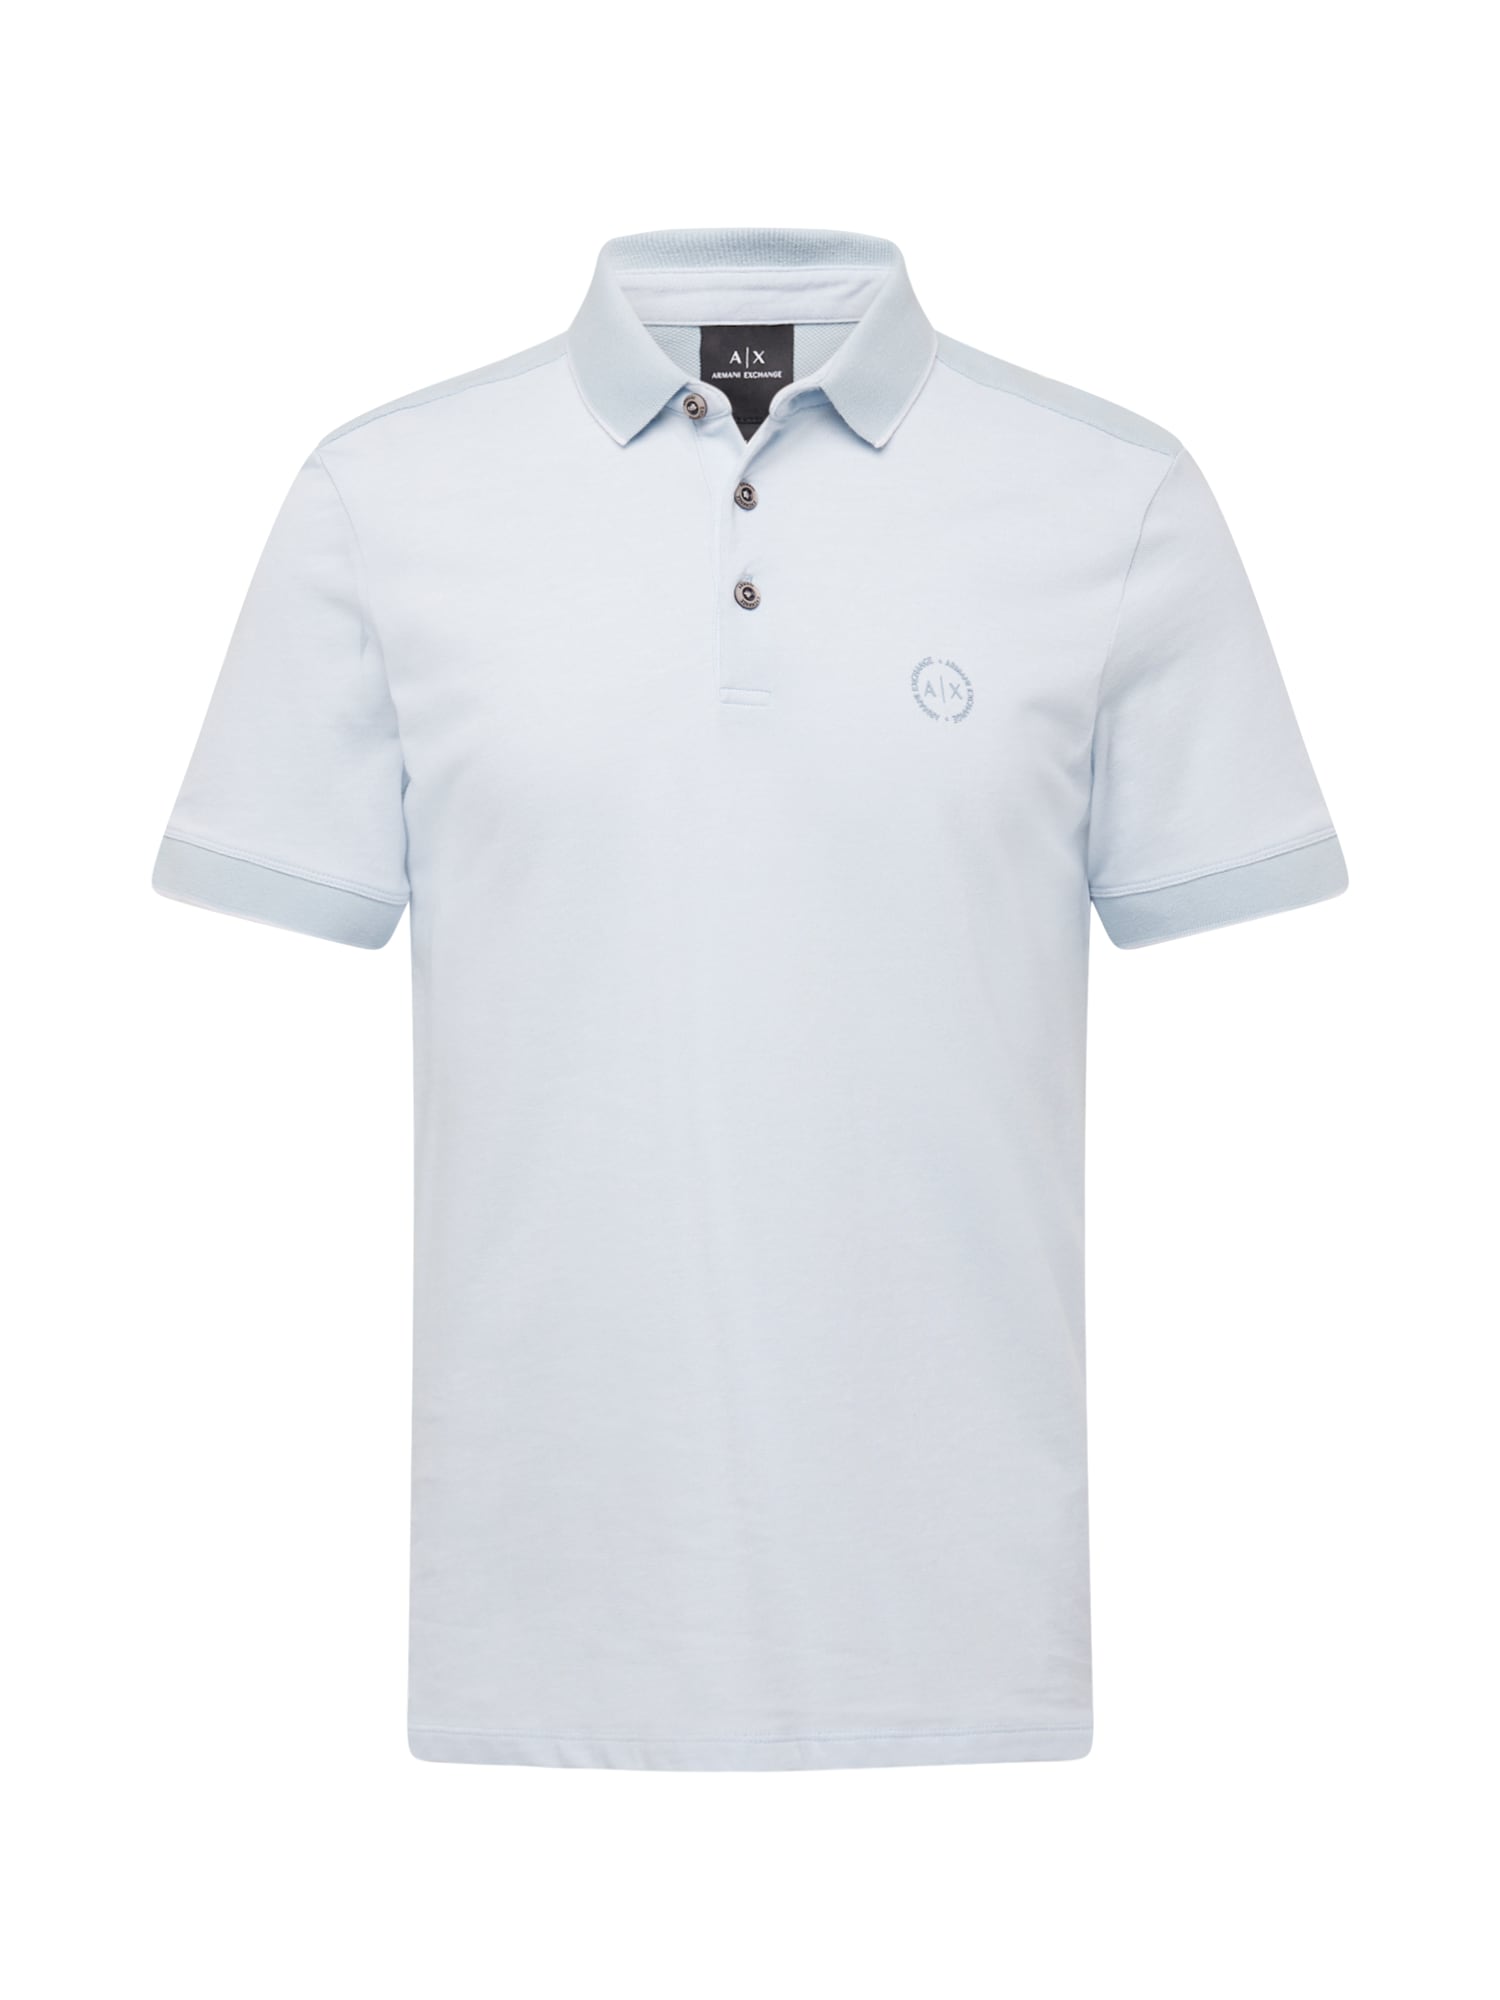 ARMANI EXCHANGE Marškinėliai pastelinė mėlyna / balta